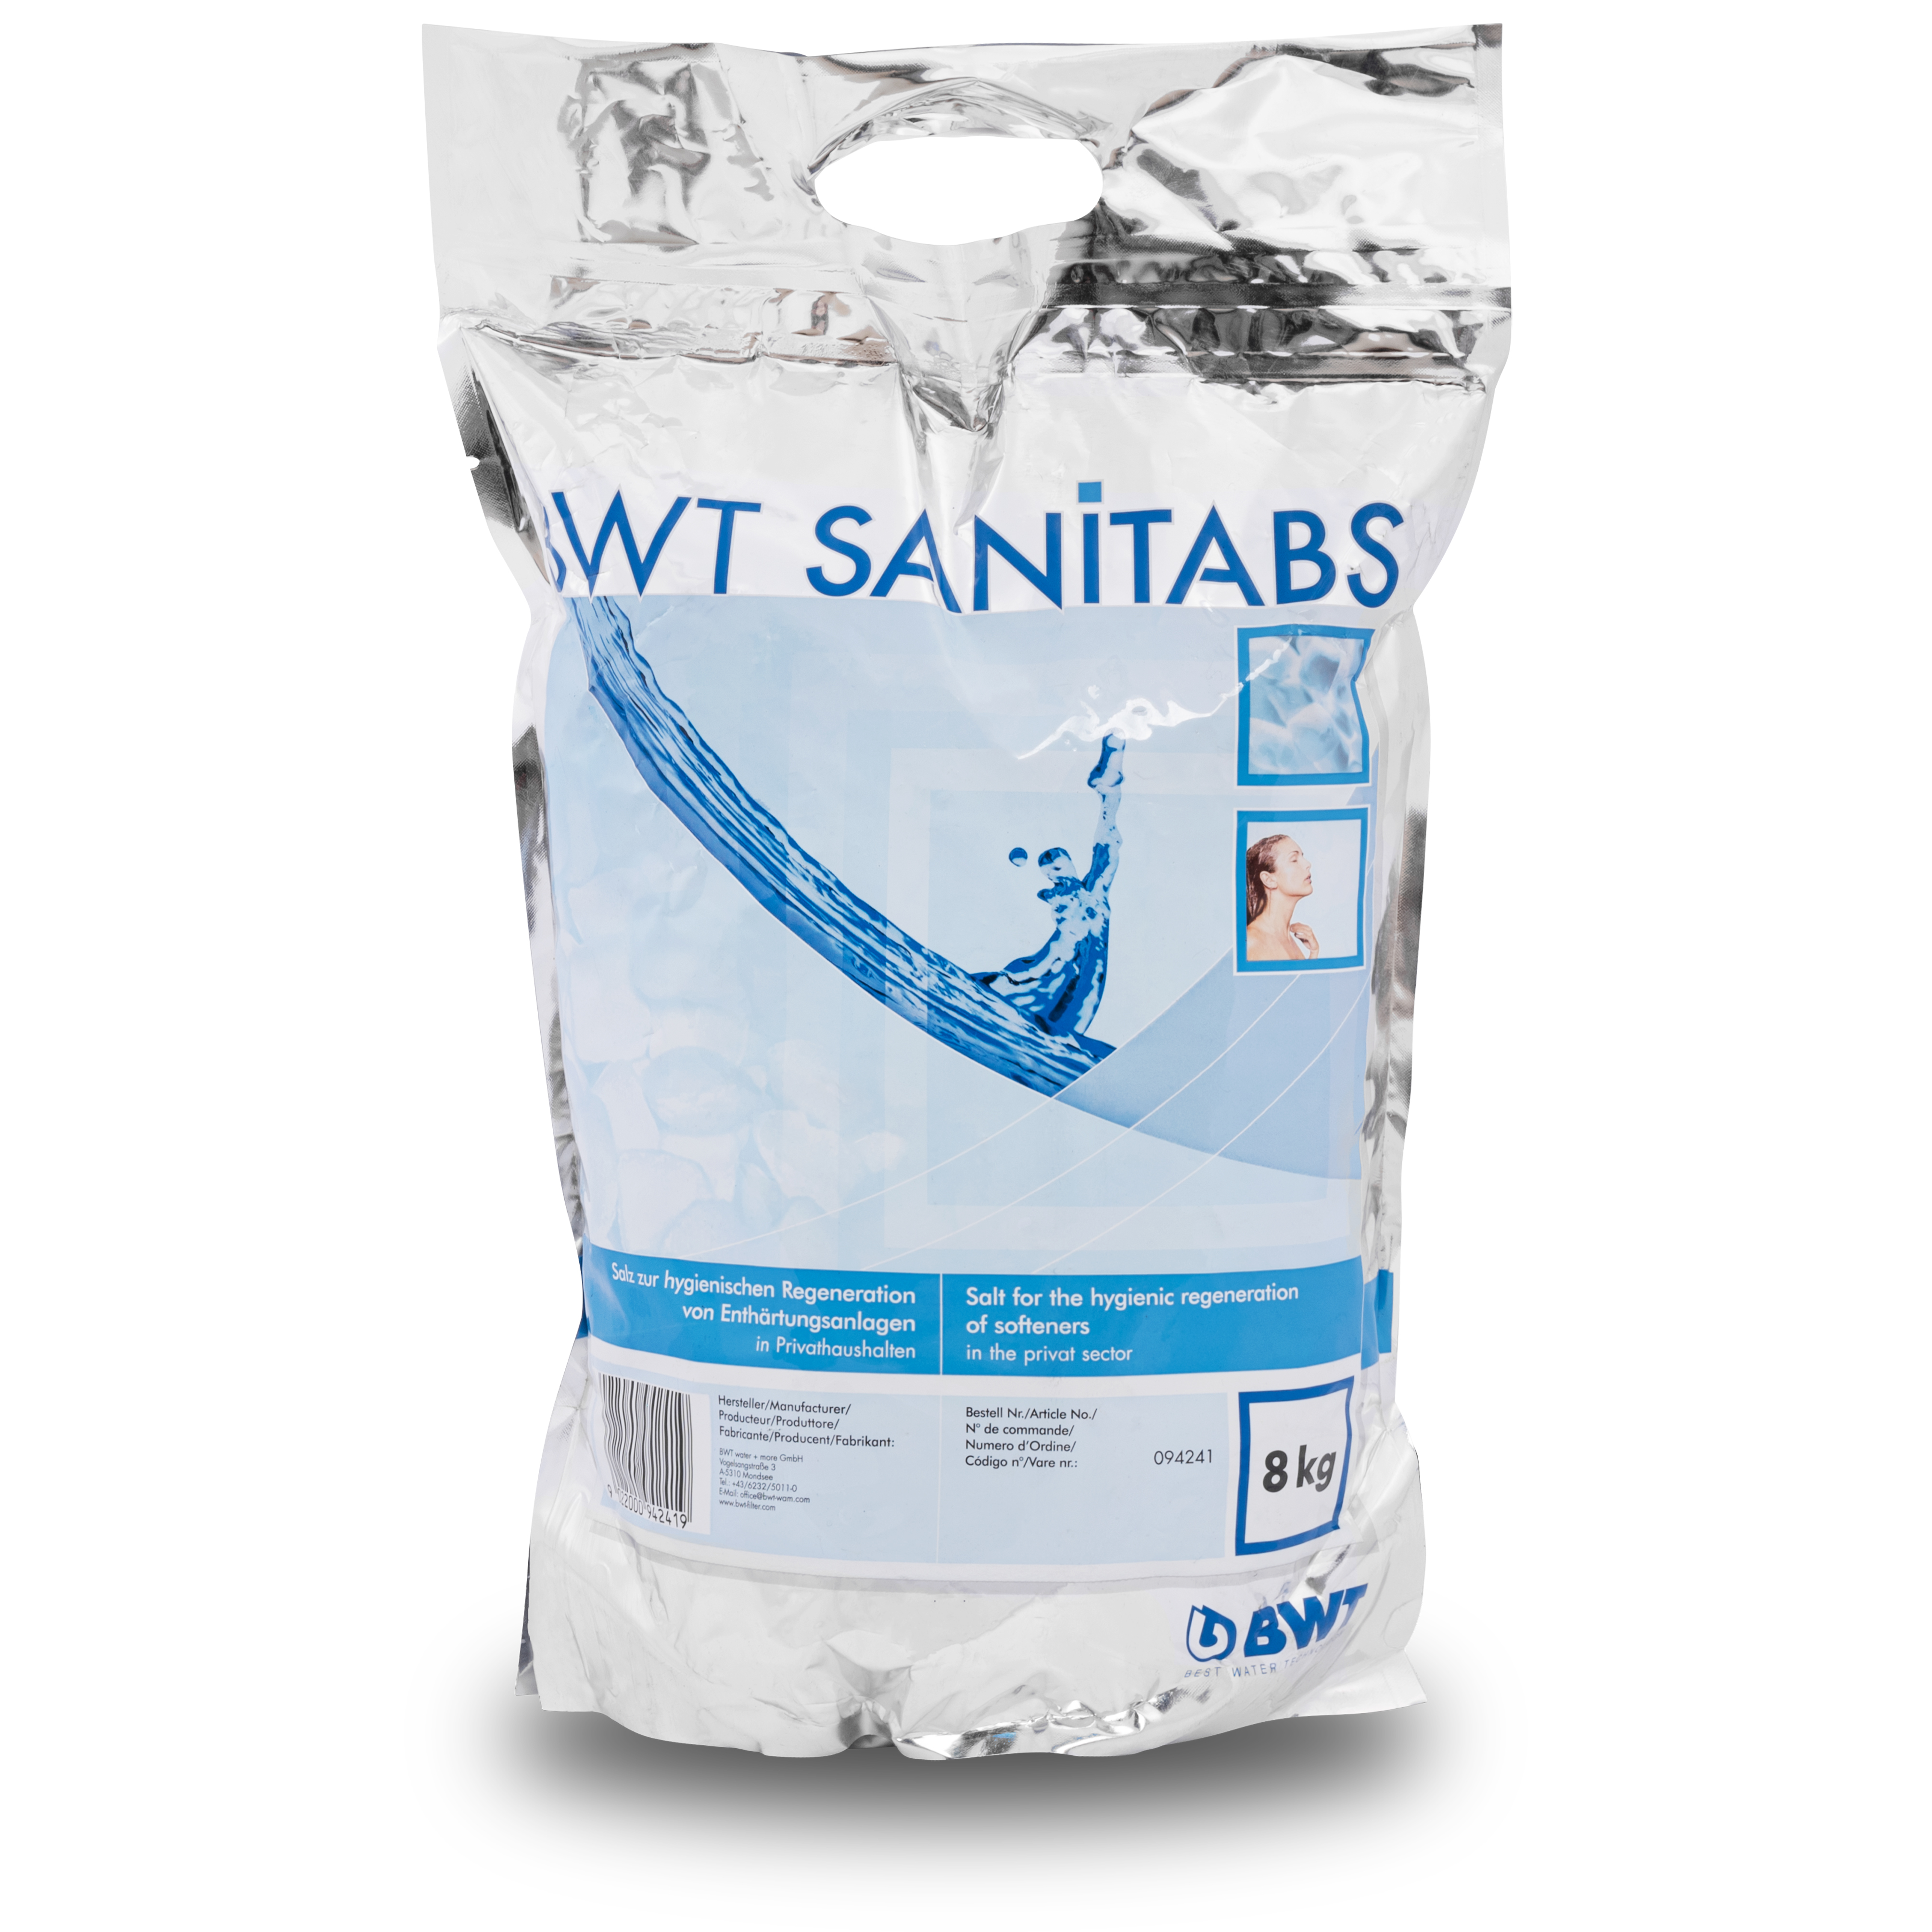 Характеристики соль для очистки воды BWT Sanitabs 94241